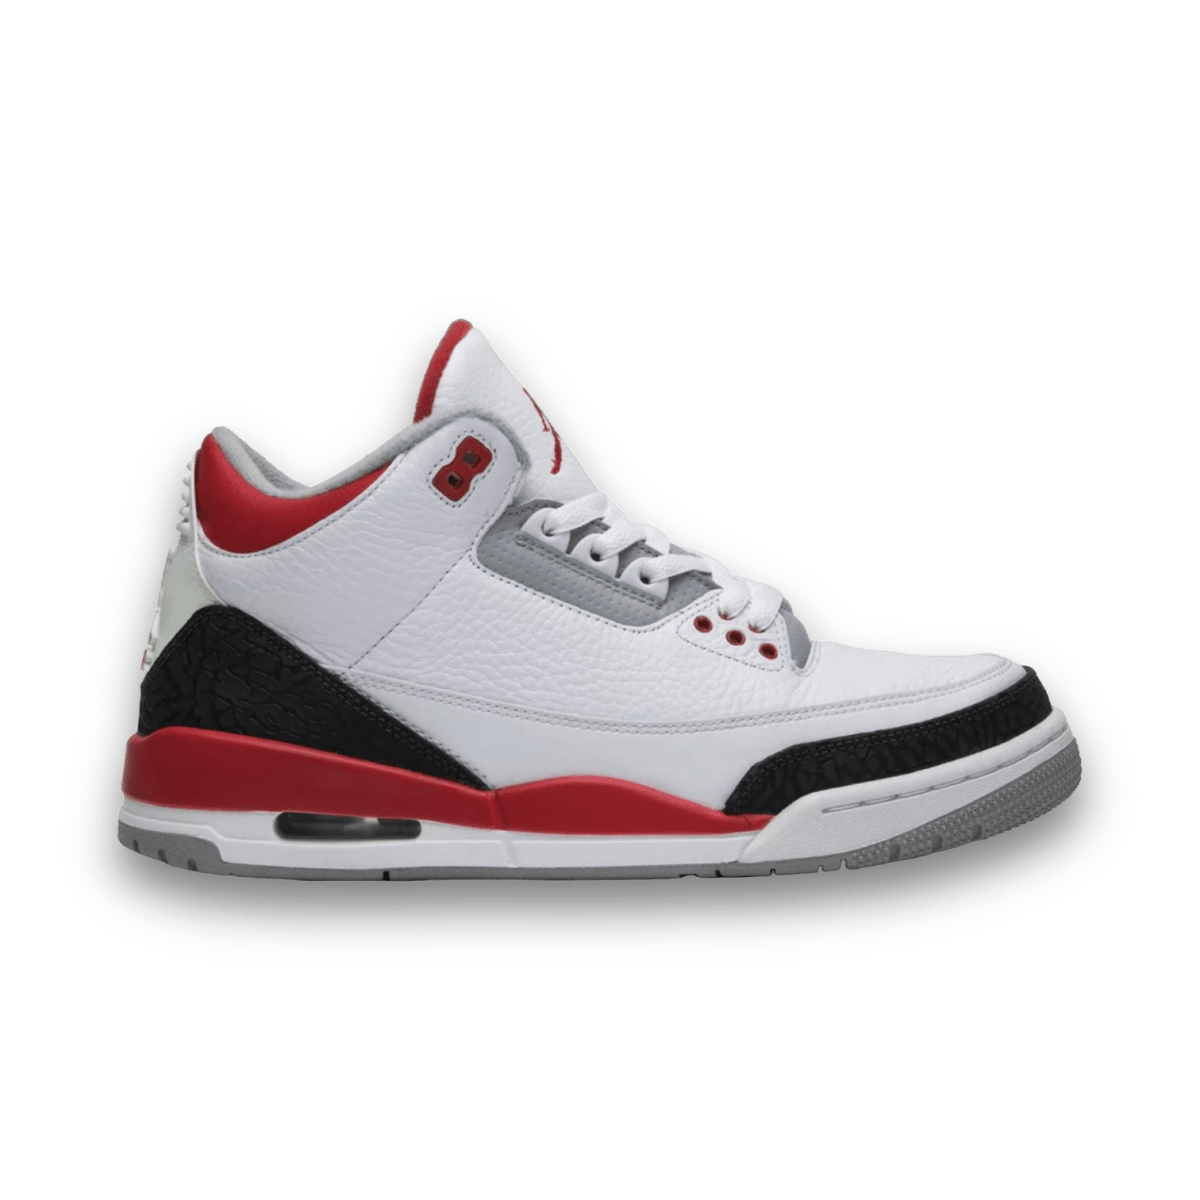 Air Jordan 3 Retro 'Fire Red' 2013 - Mid Sneaker - Jawns on Fire Sneakers & Streetwear